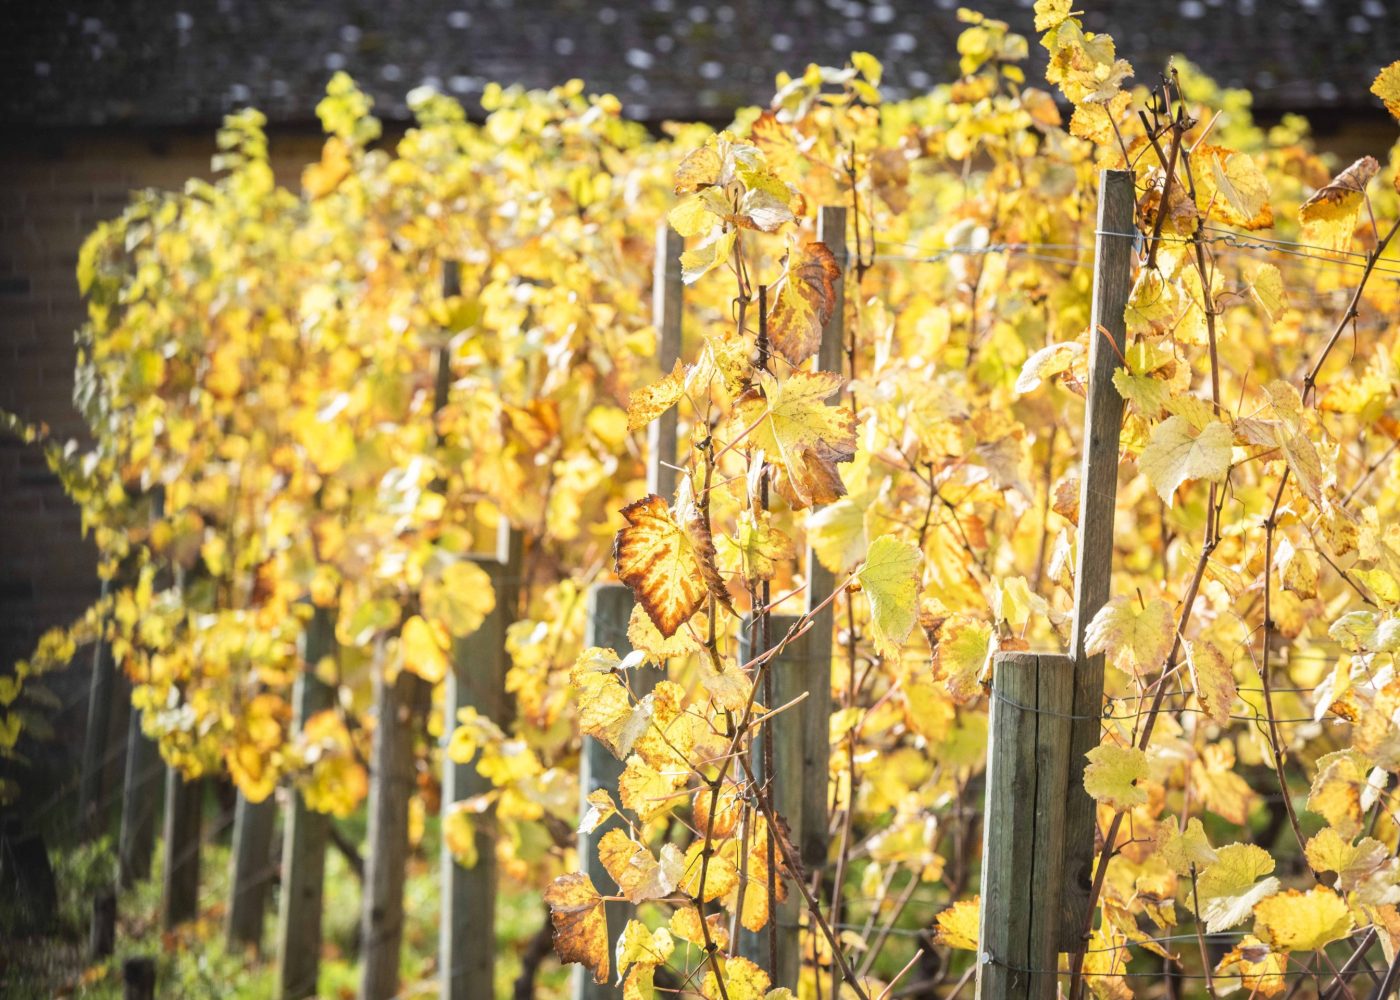 vignes en seine et marne decouvertes domaines viticoles vins 77 ©SMA cbadet